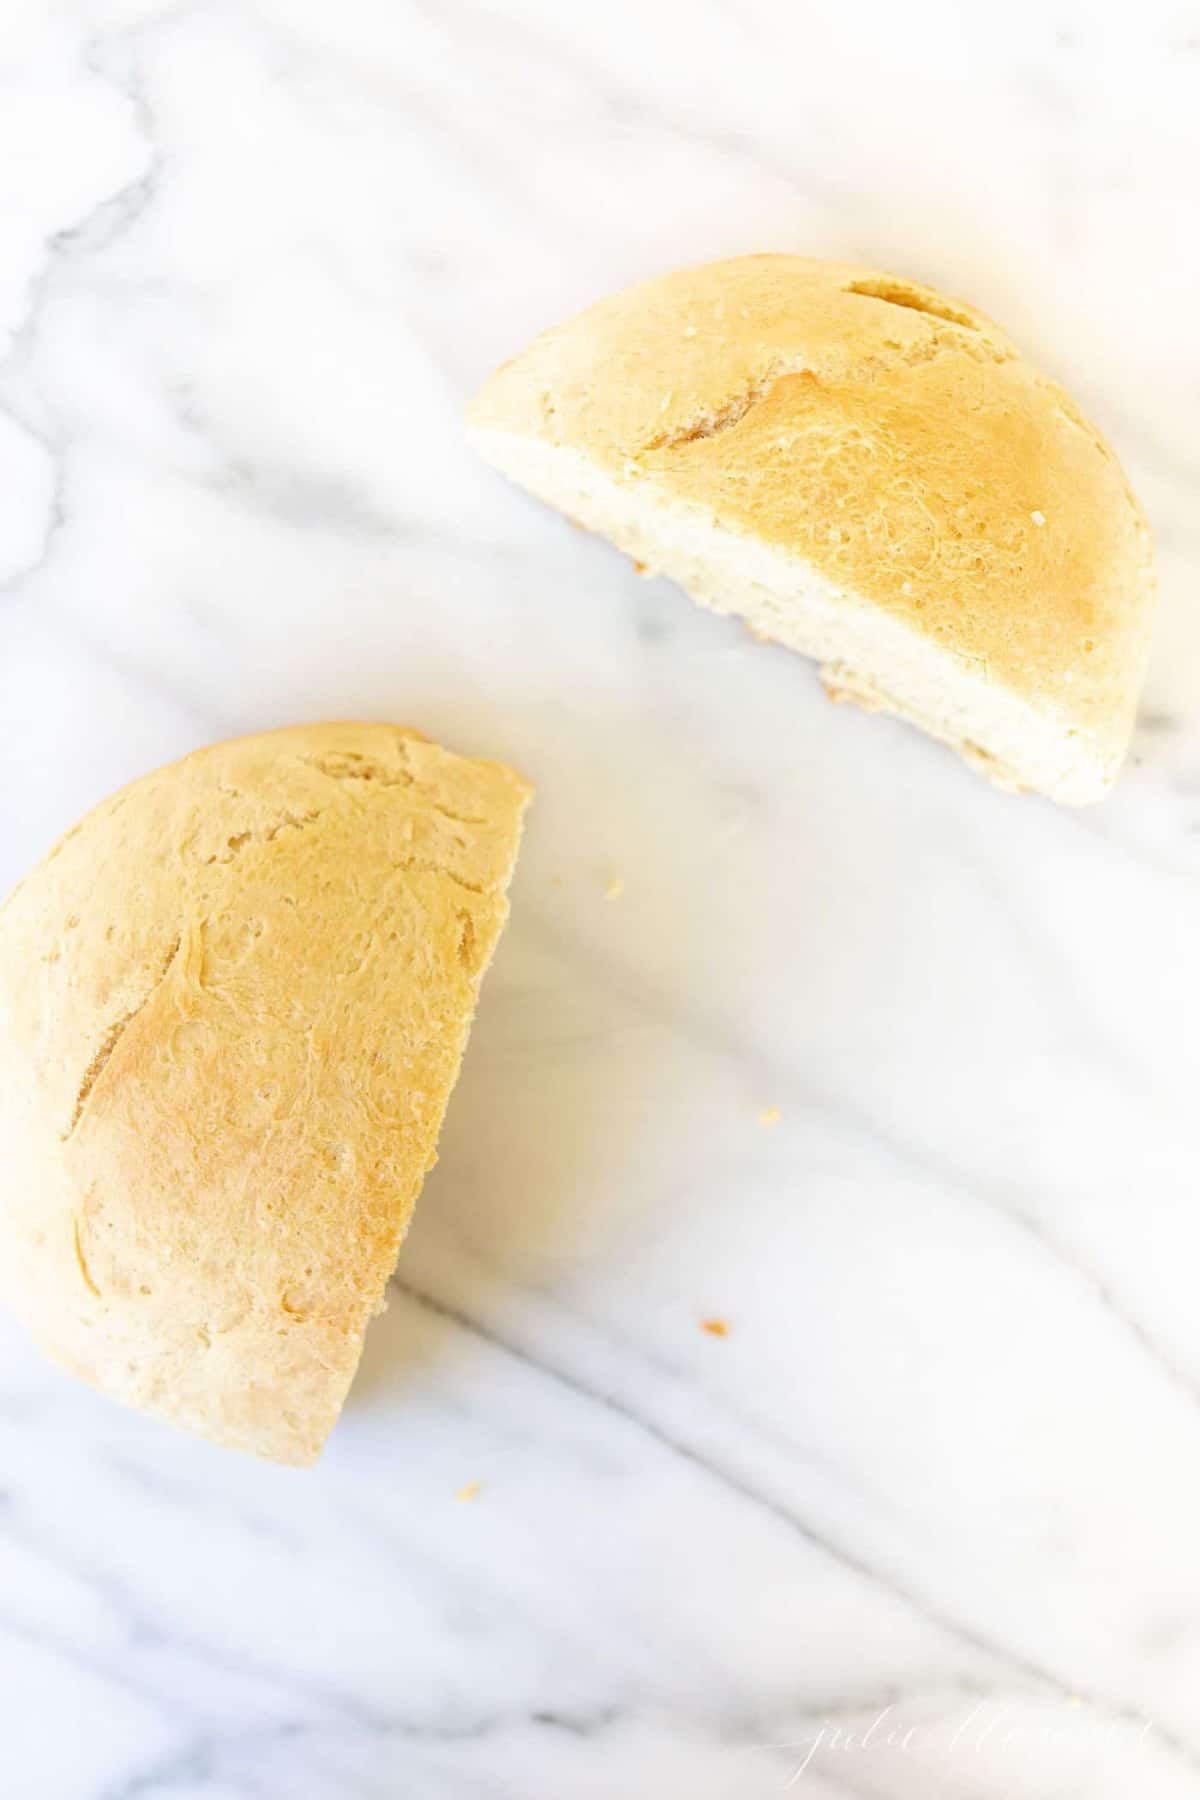 一条用酵母烘烤的圆形自制面包，将大理石表面切成两半。